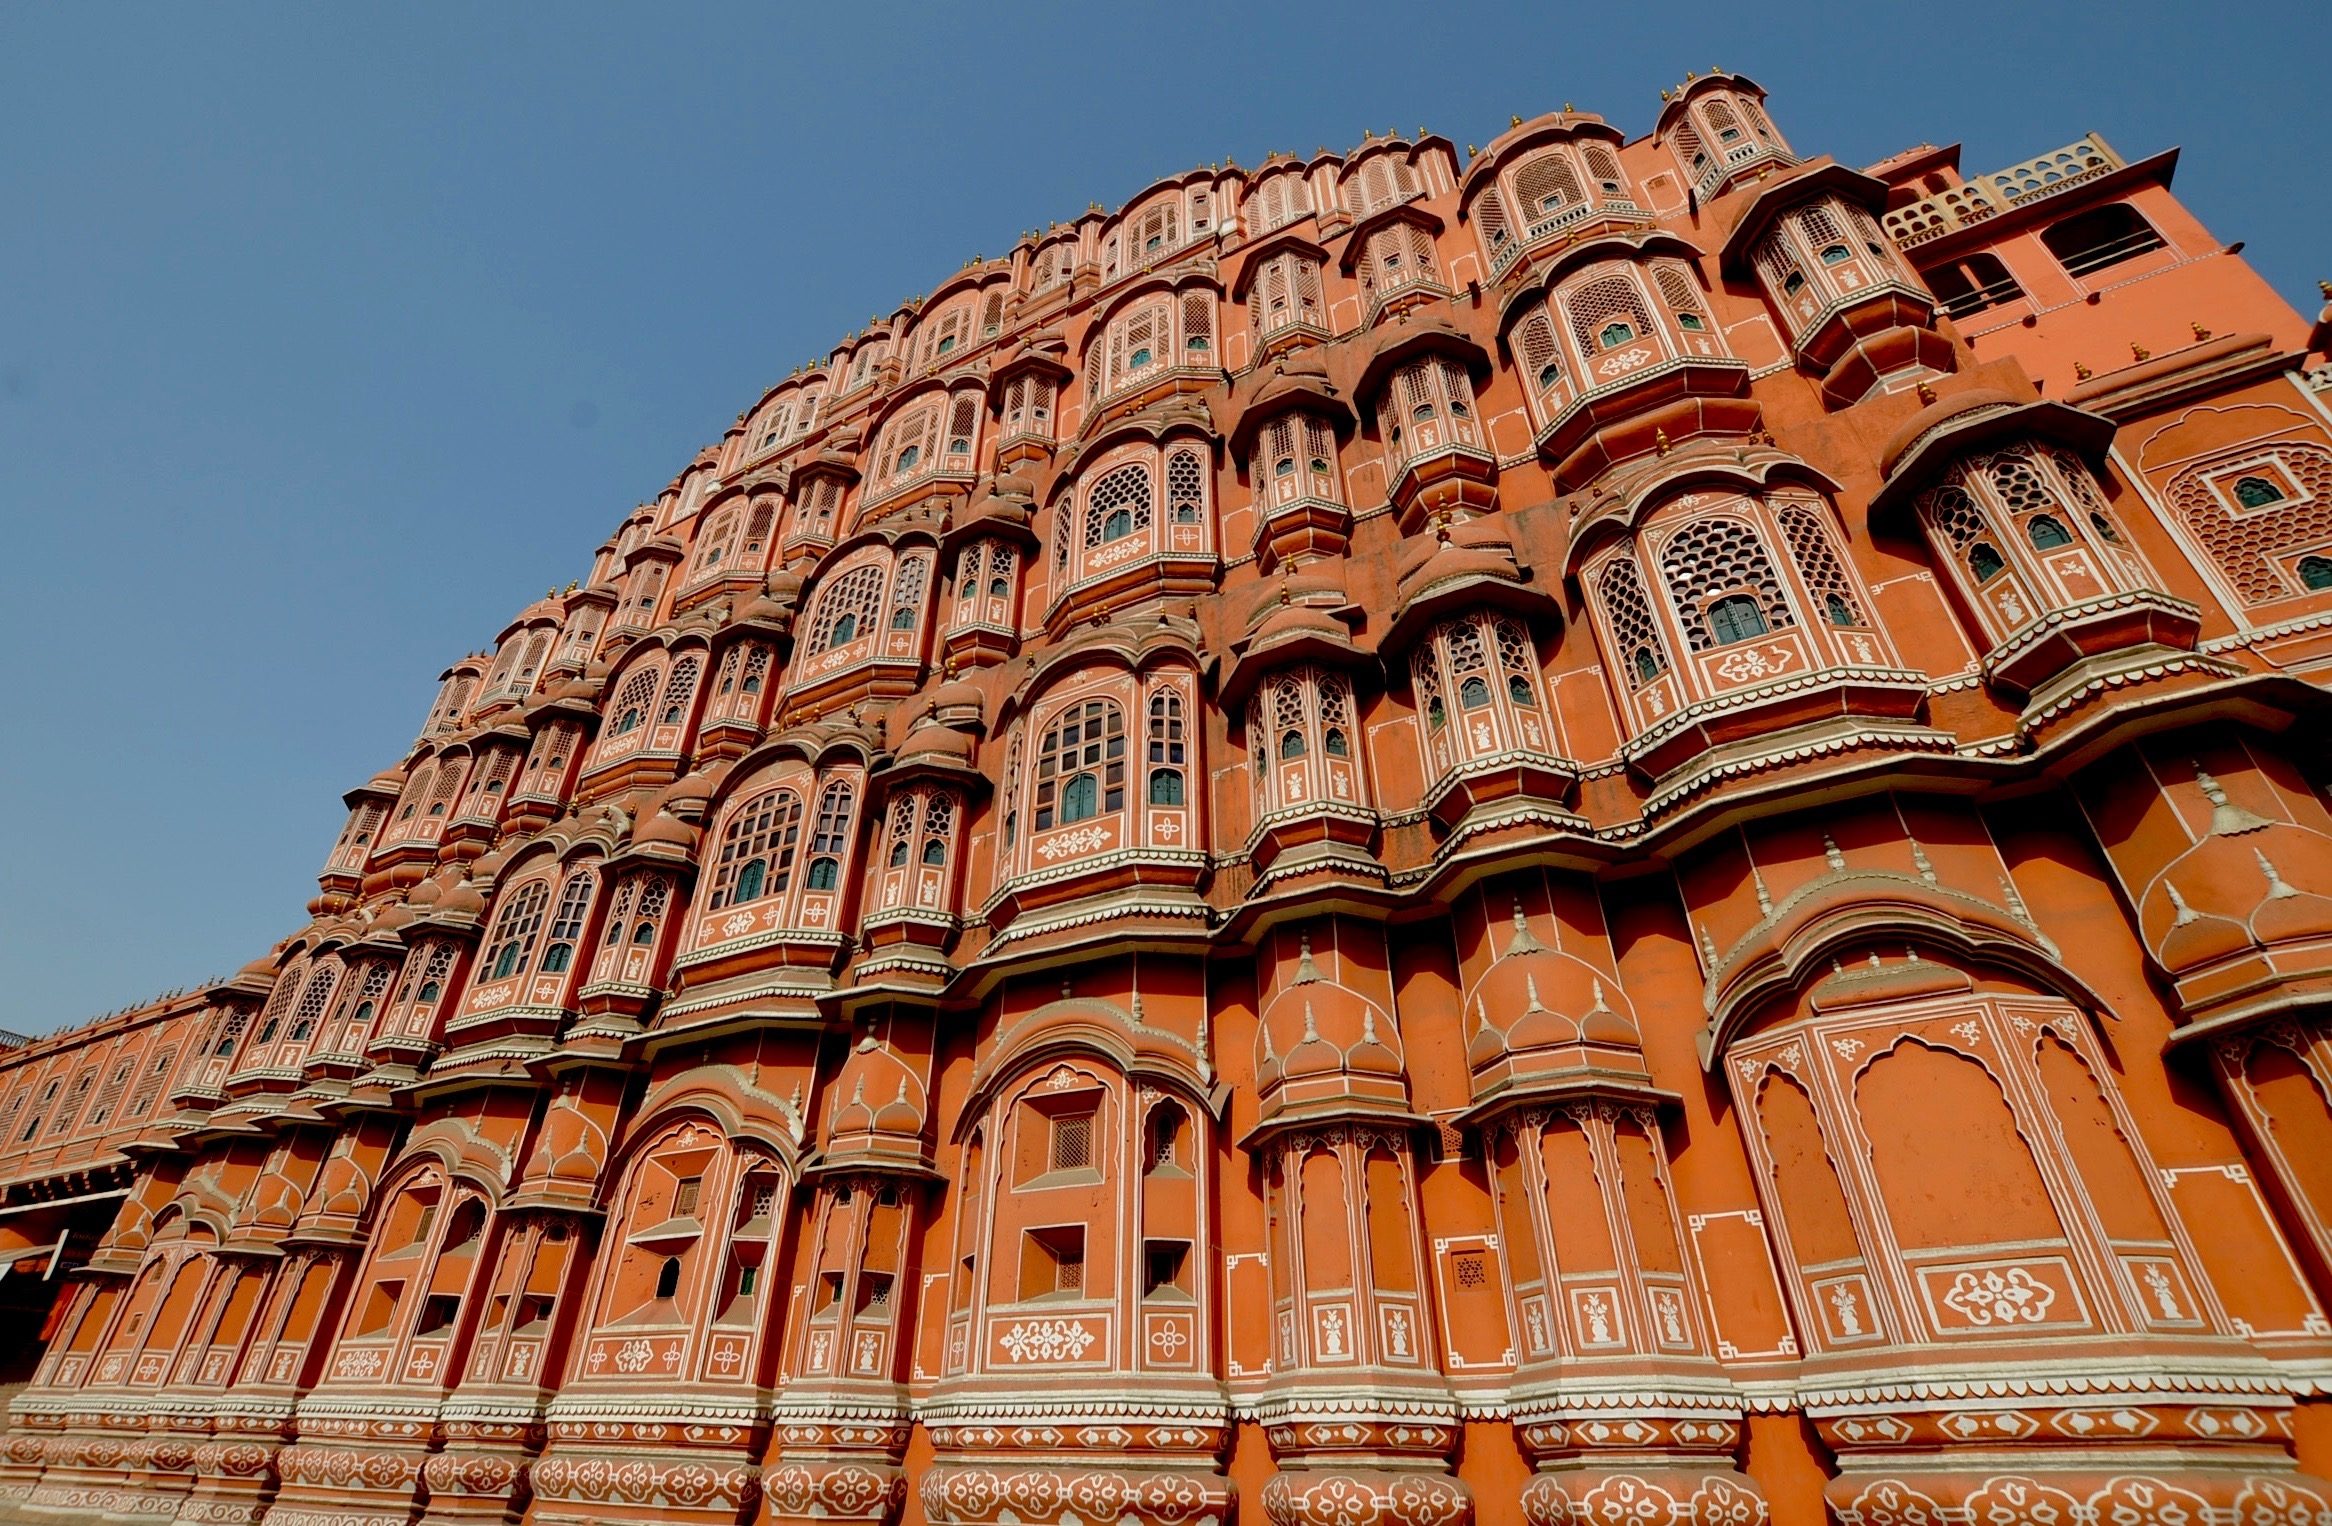  Voyage en Inde du Nord/ aufildeslieux.fr/Le Palais des vents à Jaipur©K.Hibbs